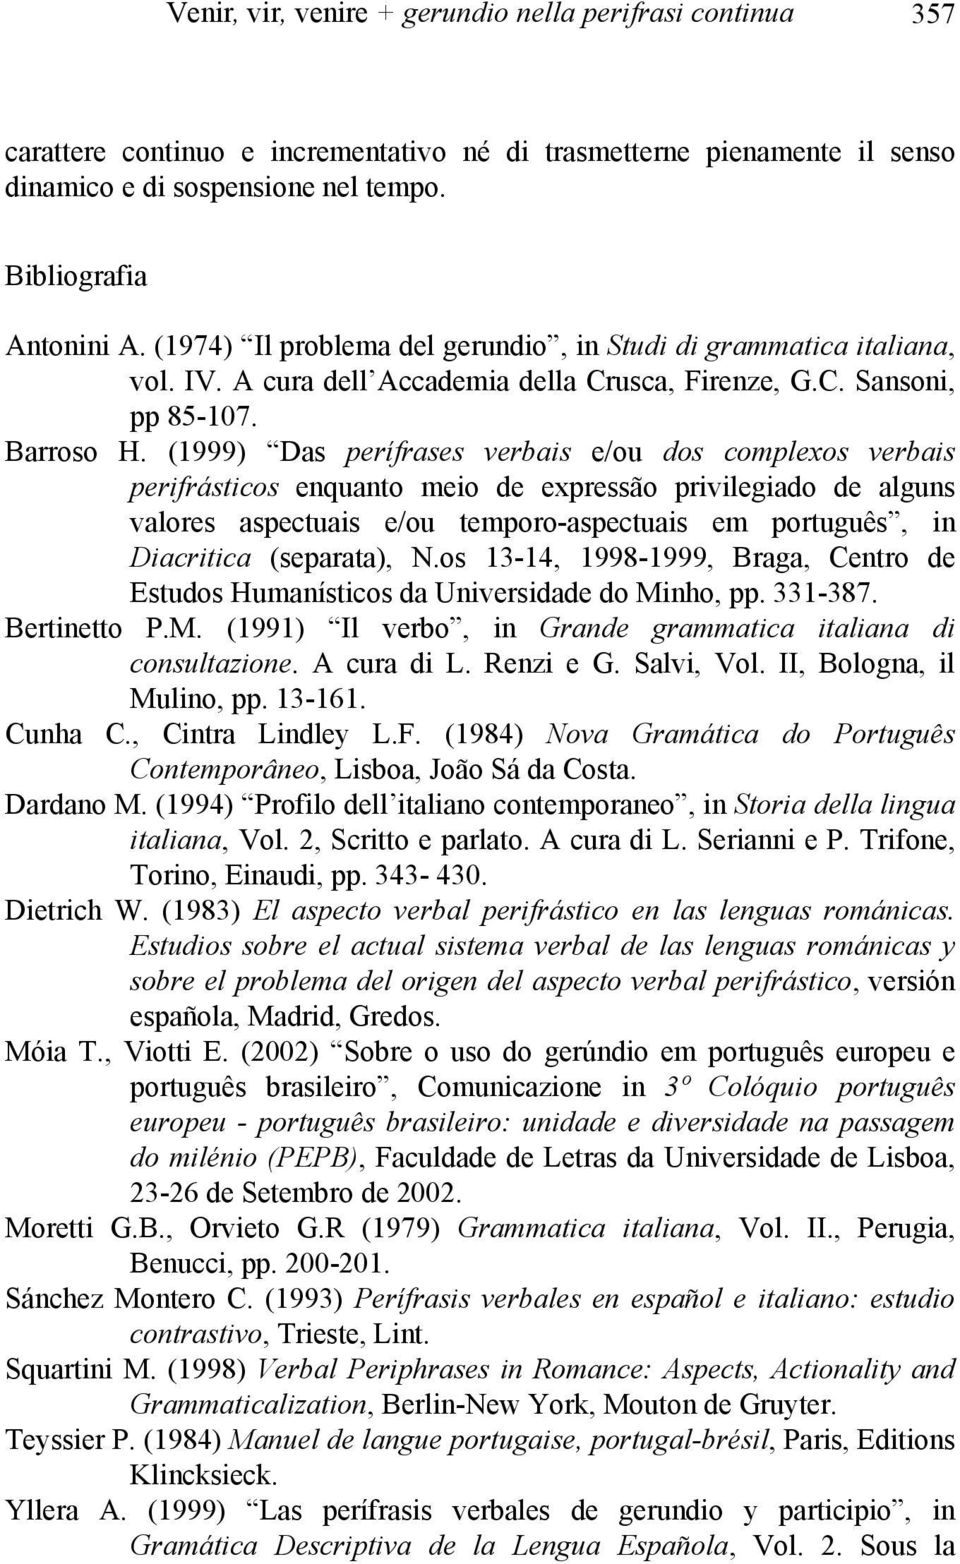 (1999) Das perífrases verbais e/ou dos complexos verbais perifrásticos enquanto meio de expressão privilegiado de alguns valores aspectuais e/ou temporo-aspectuais em português, in Diacritica